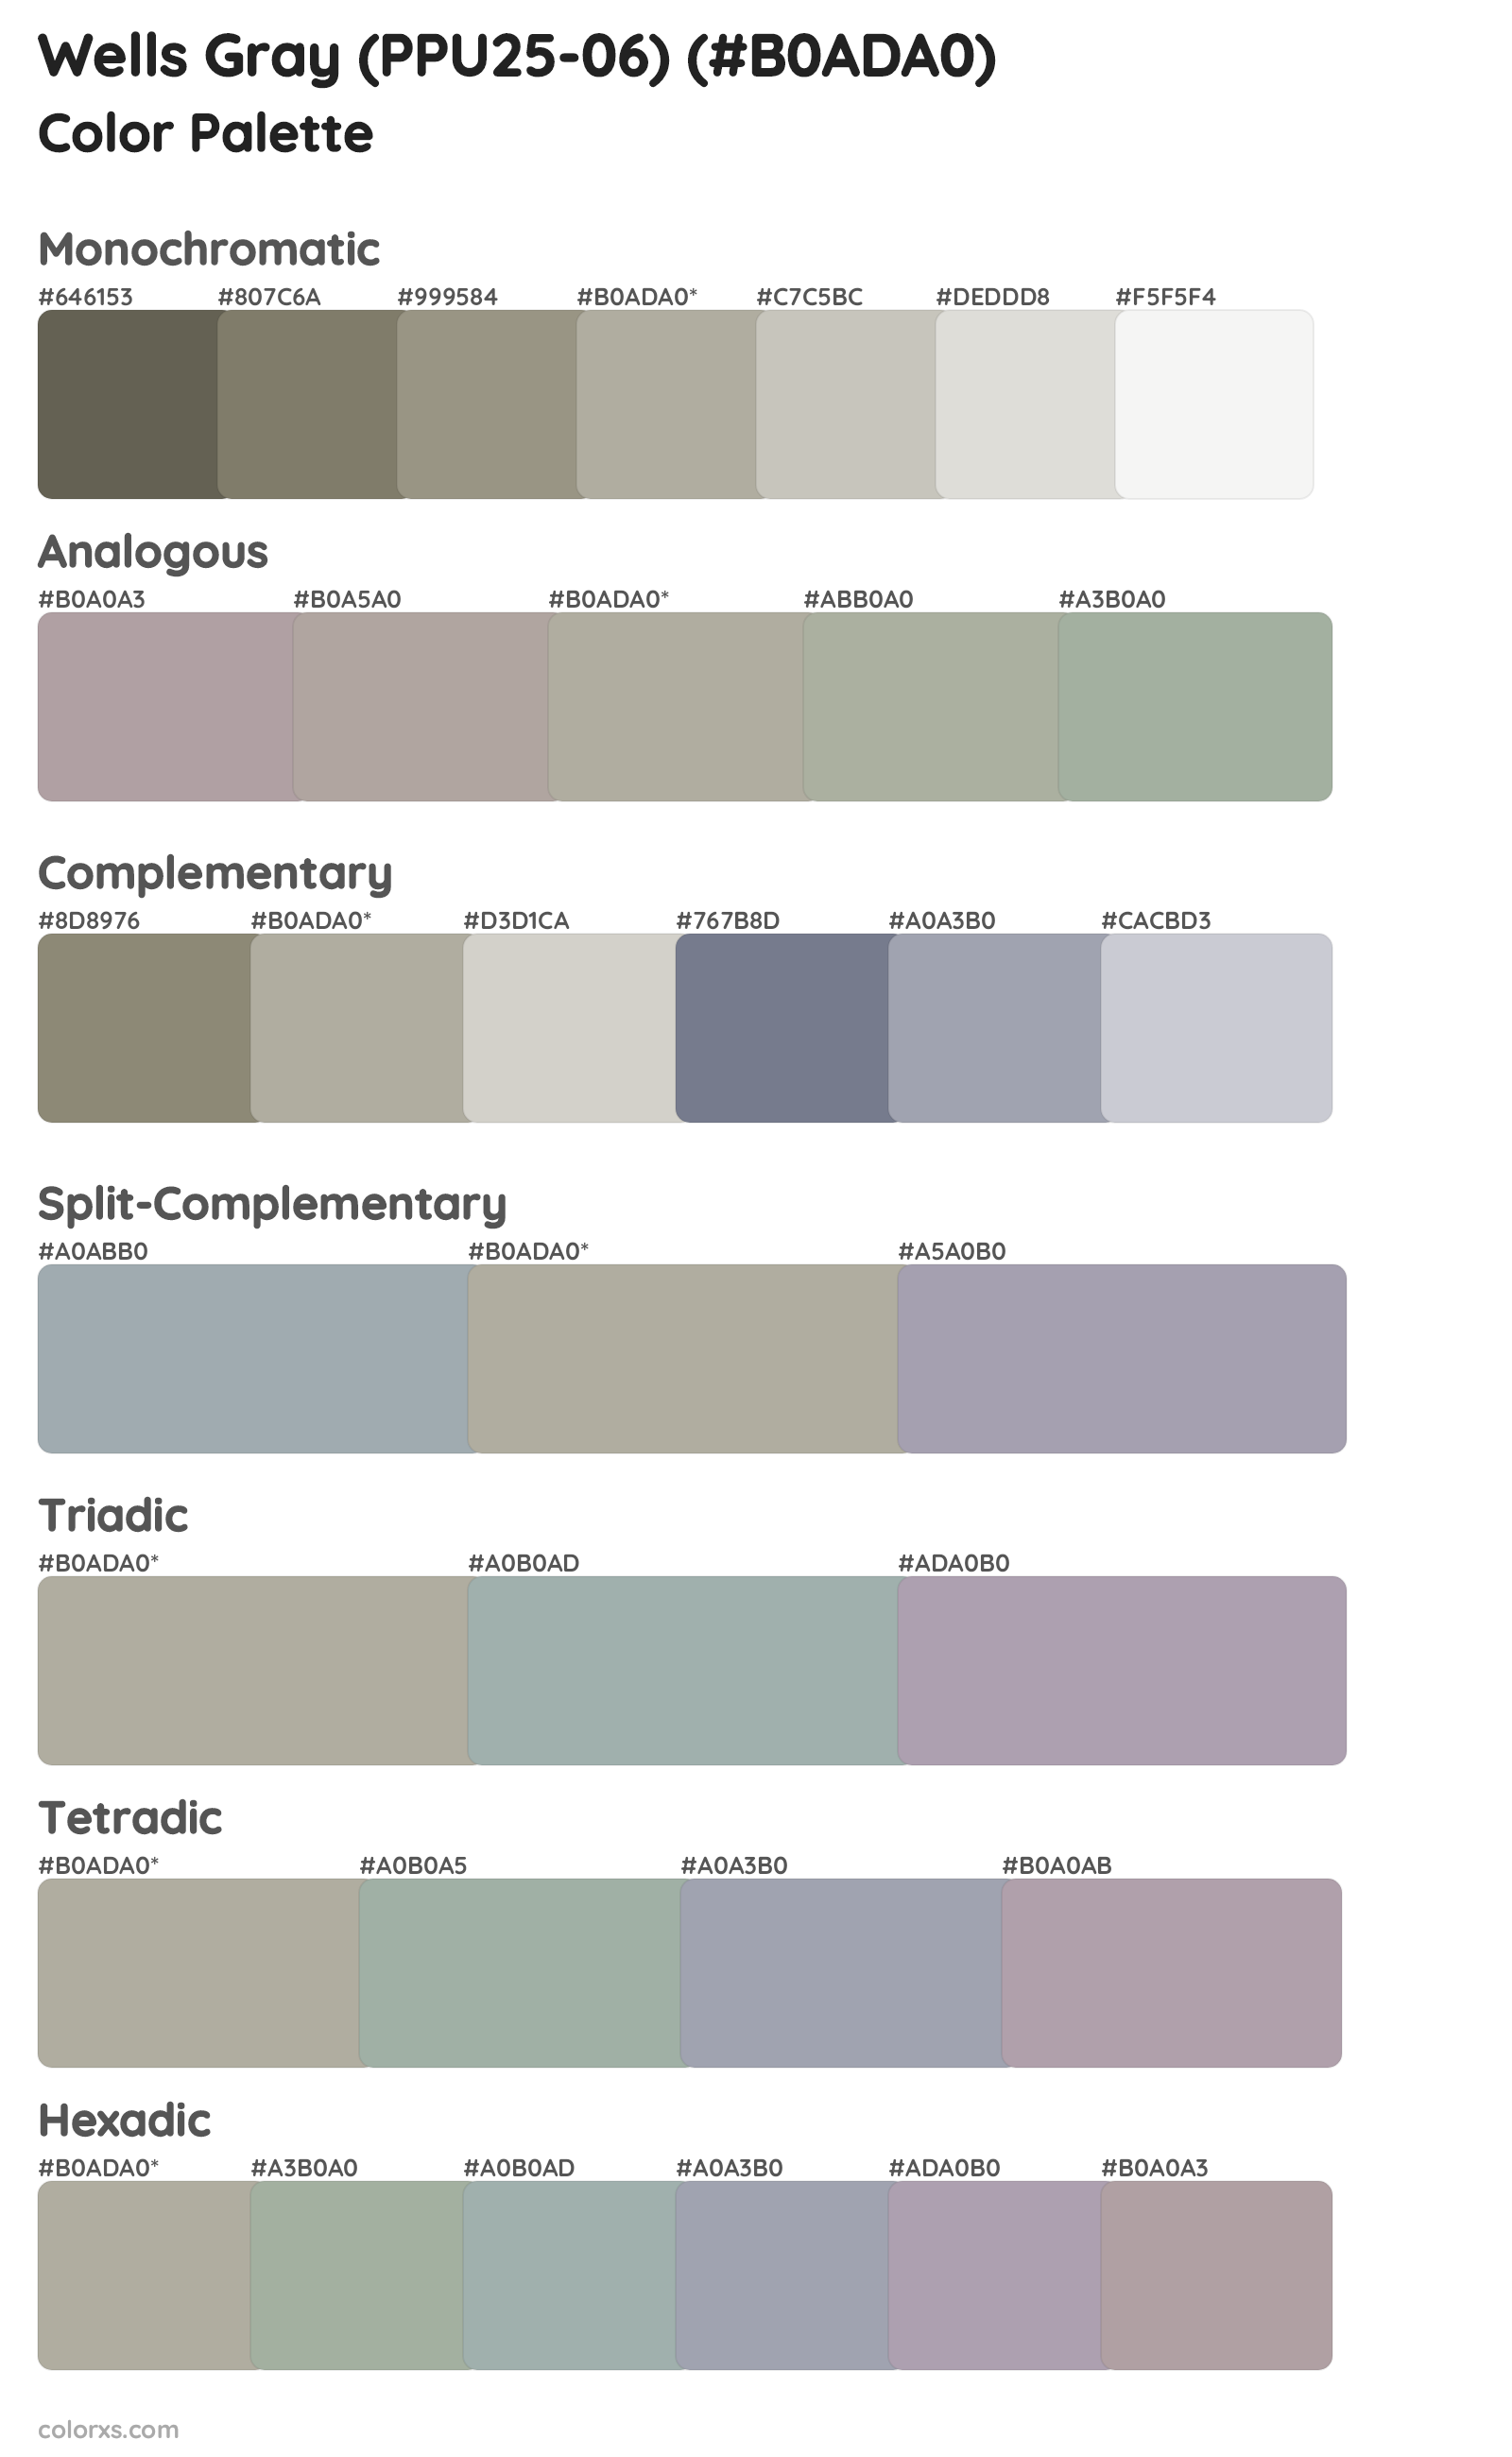 Wells Gray (PPU25-06) Color Scheme Palettes